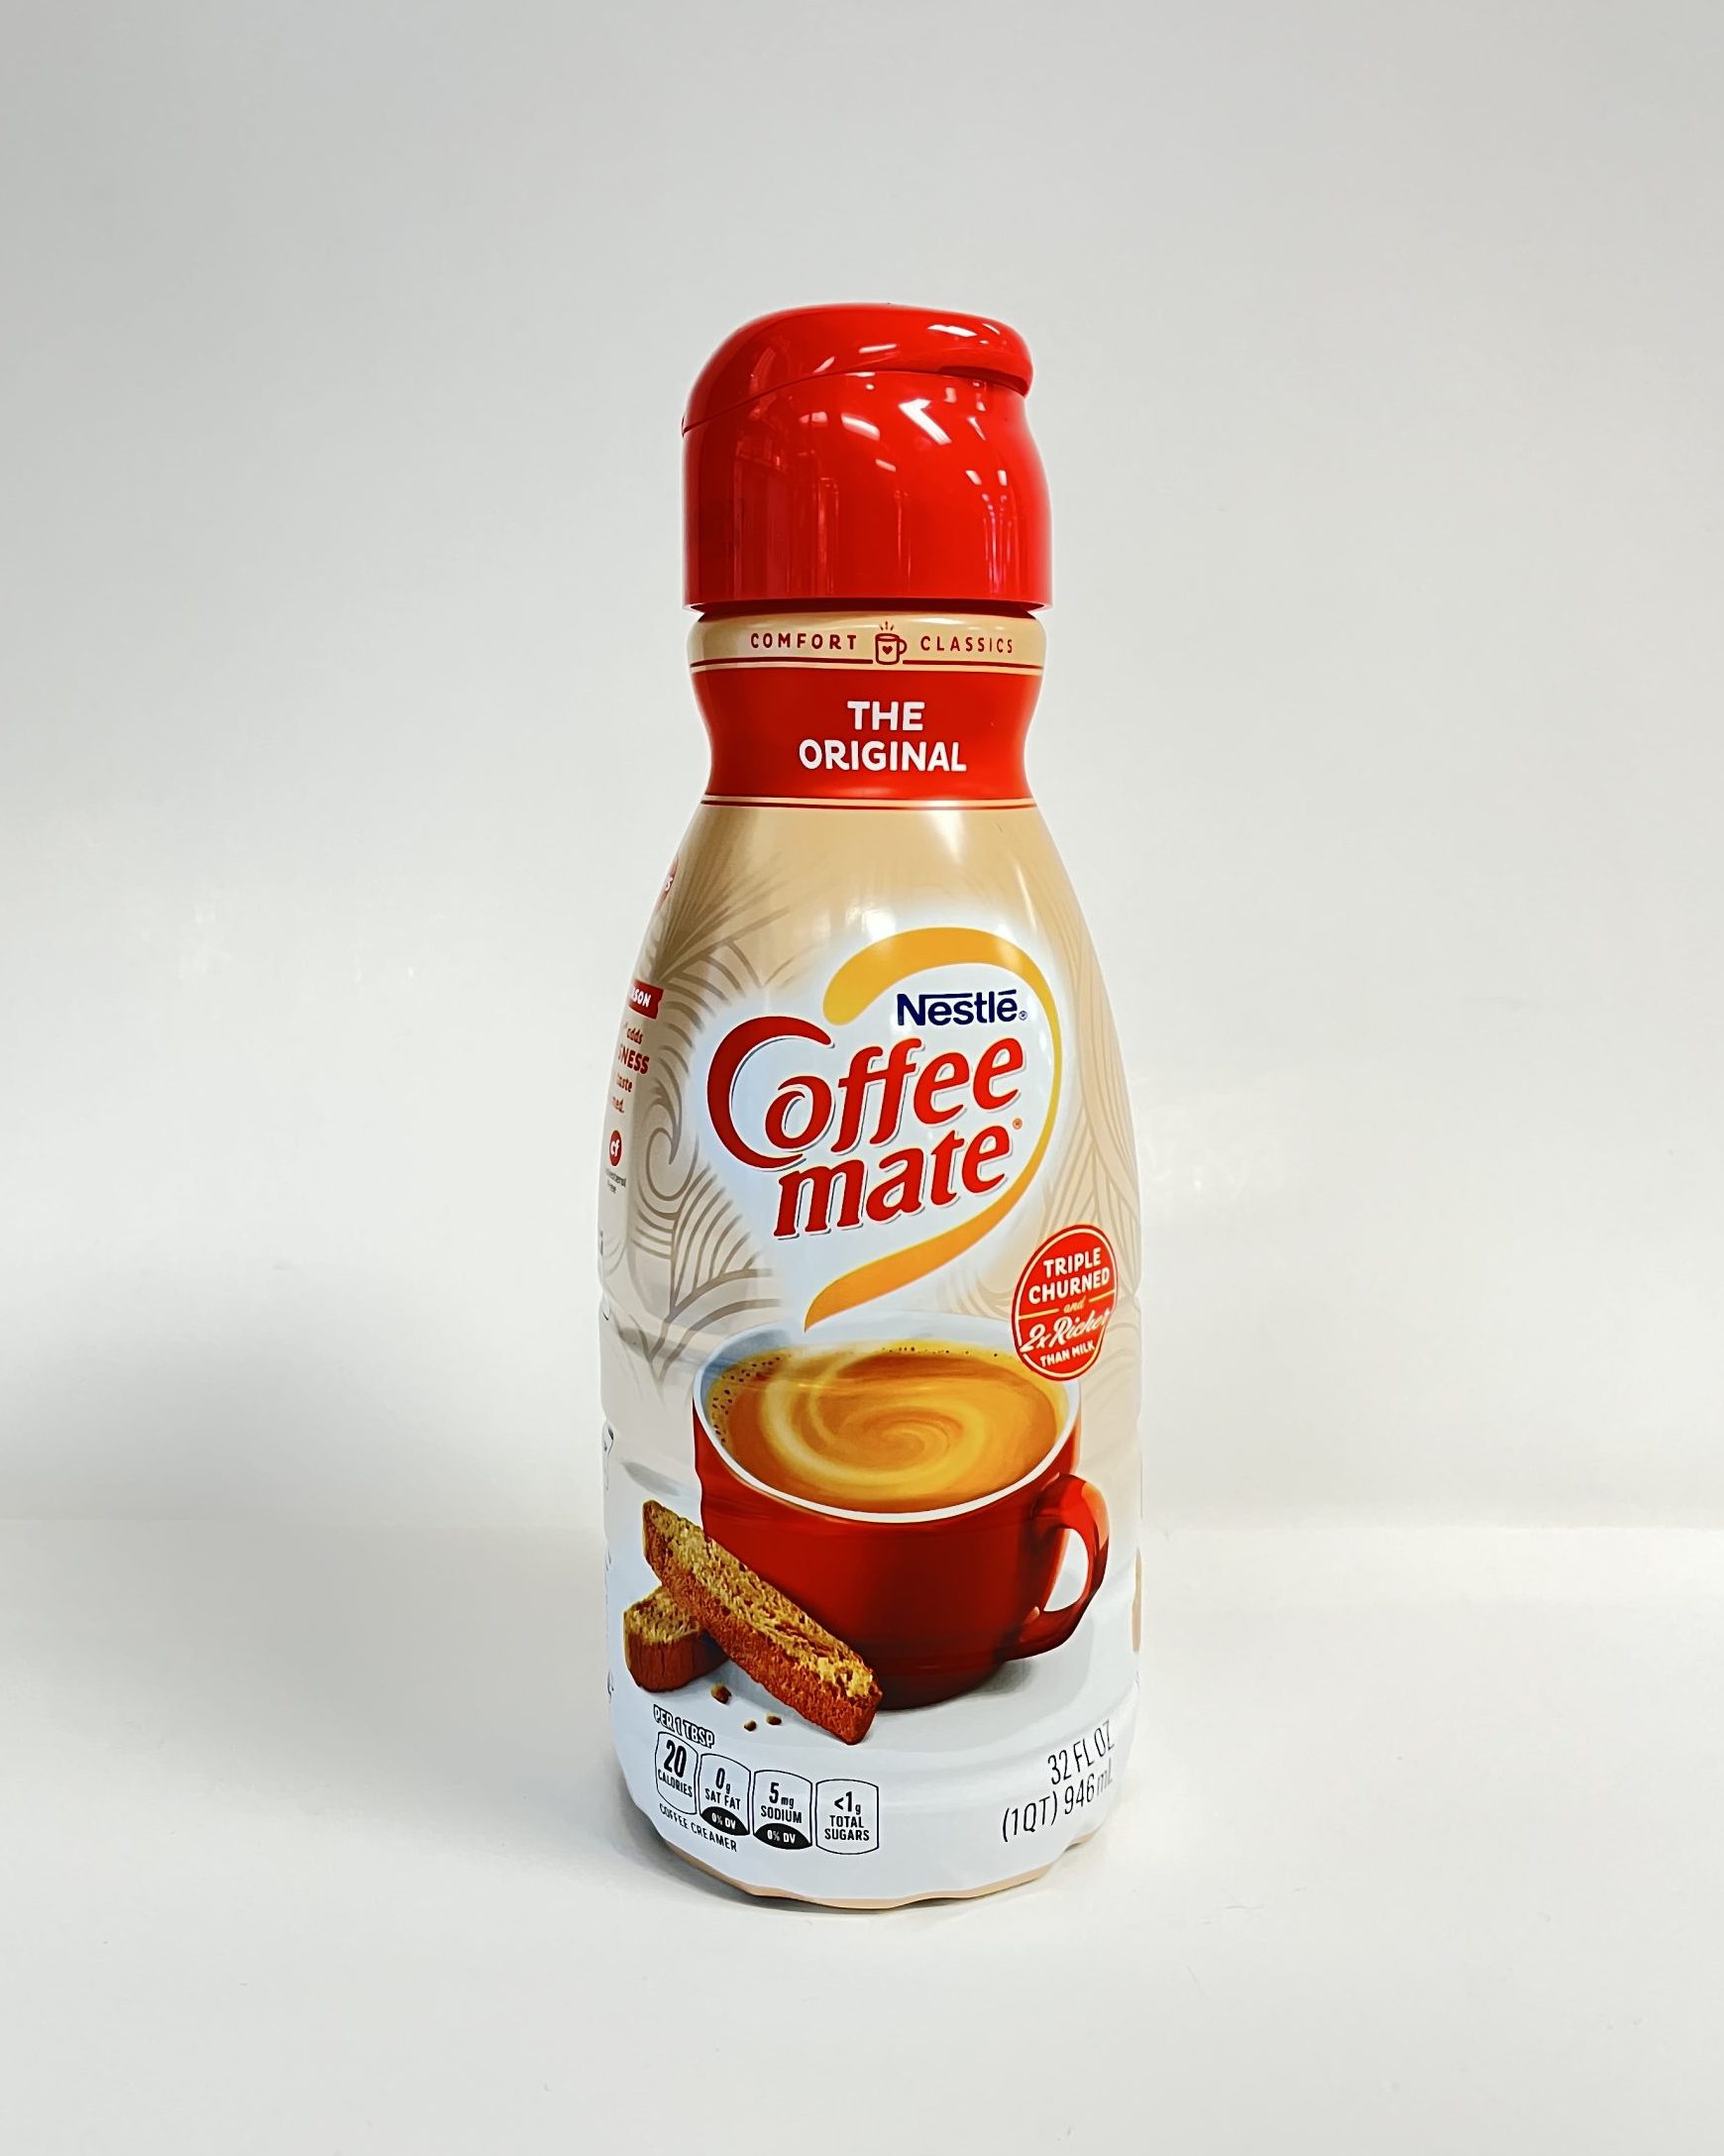 Nestlé Coffee Mate The Original Coffee Creamer, 32 fl oz - The